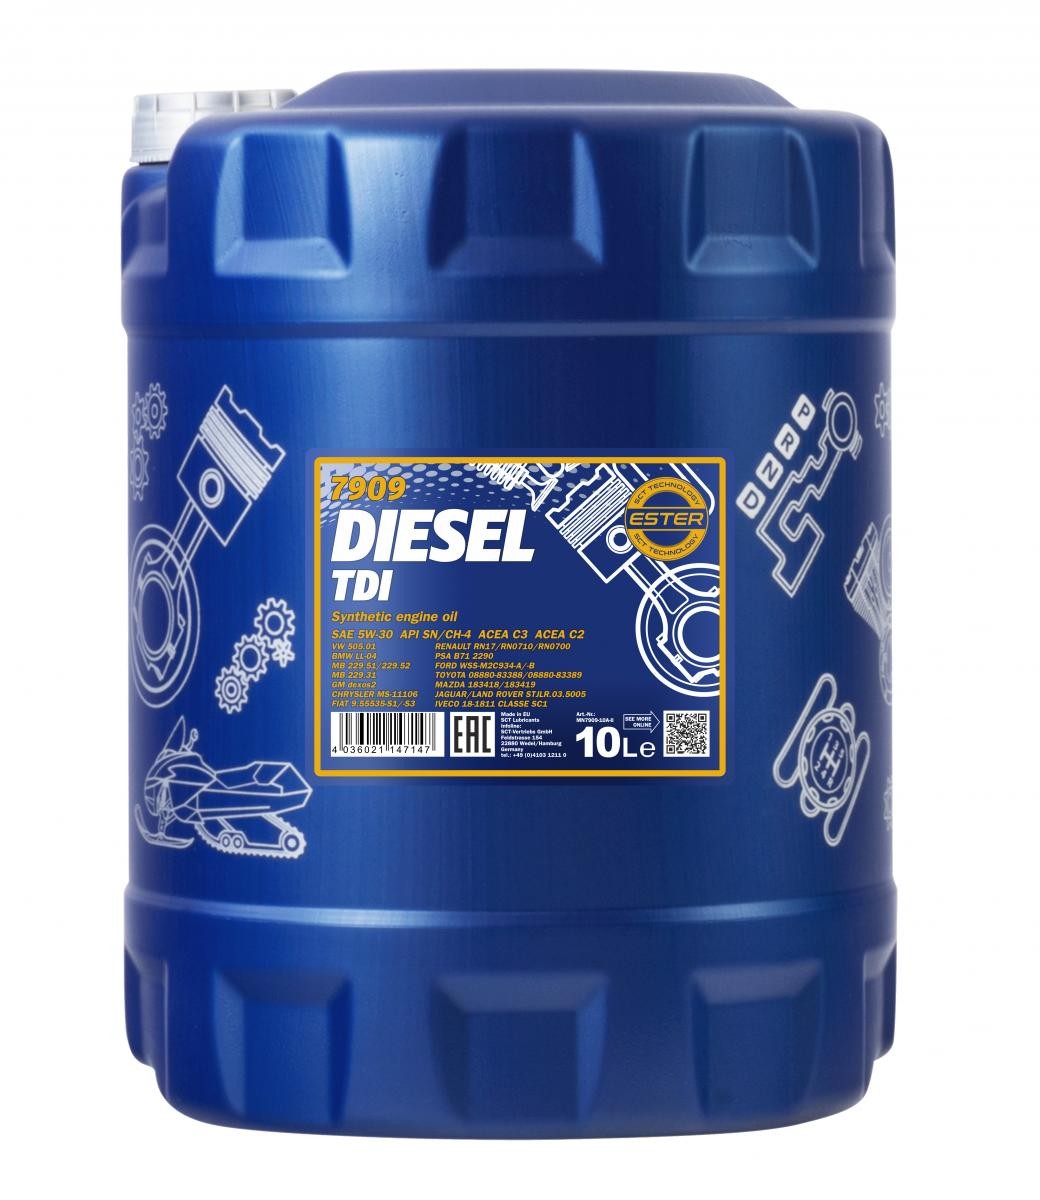 5W-30 Mannol 7909 Diesel TDI Motoröl 10 Liter